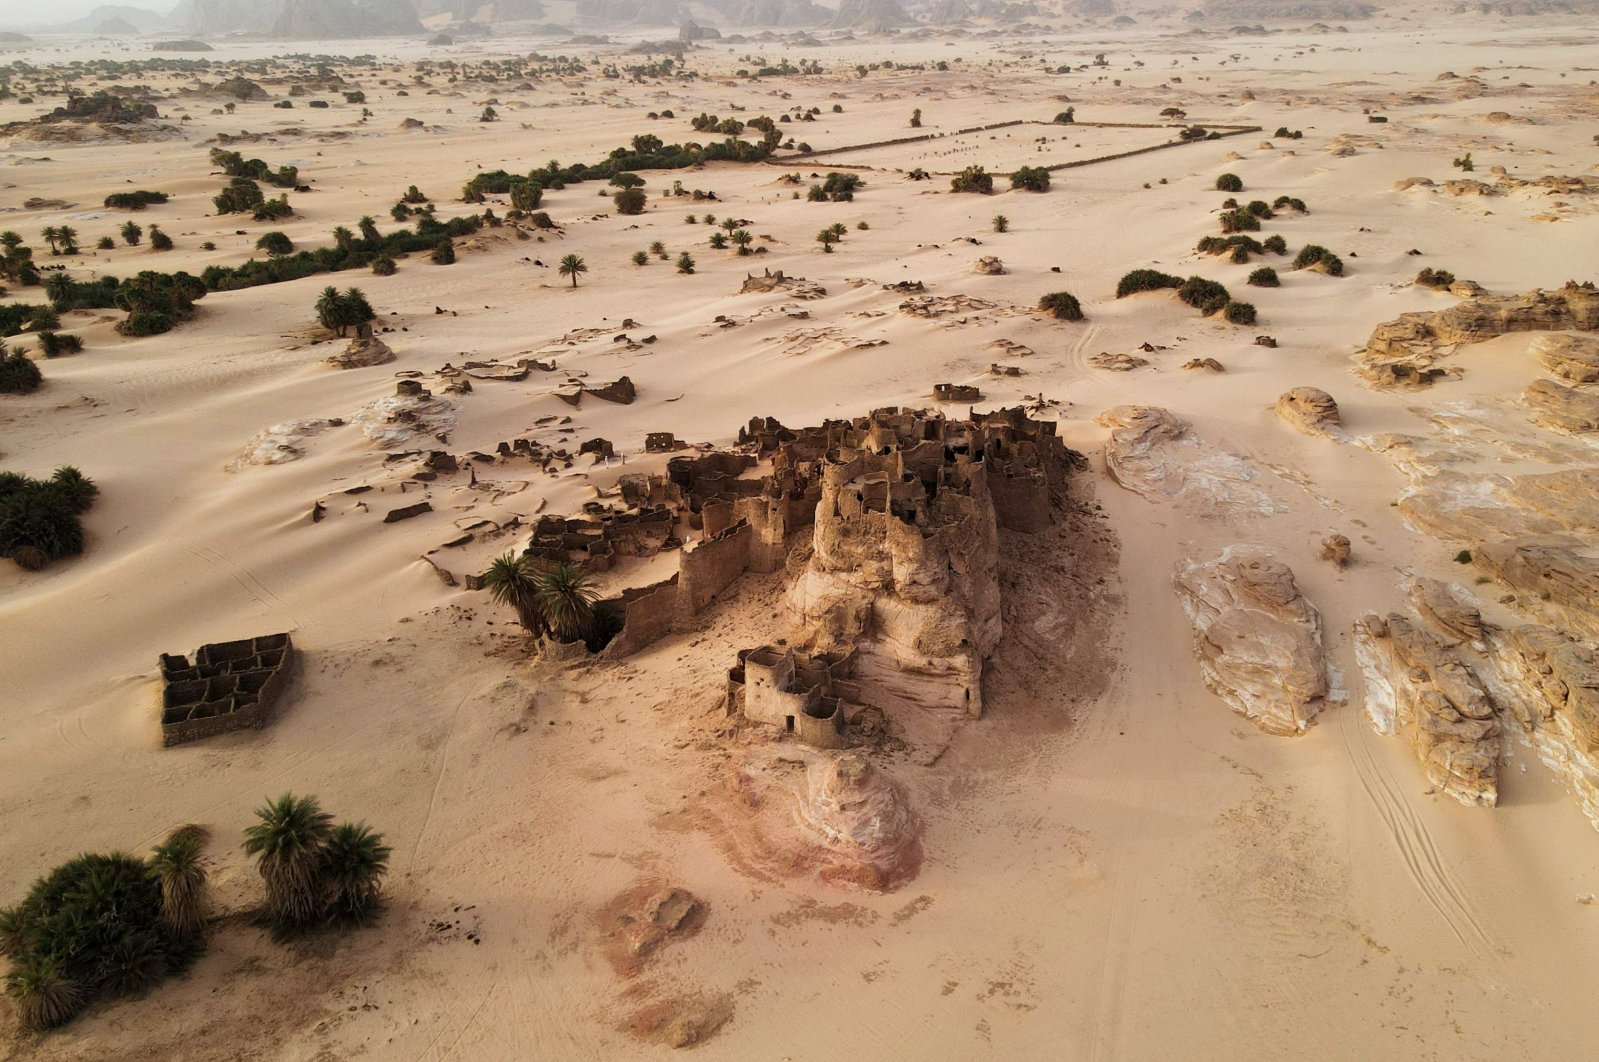 Harta karun gurun yang hilang: ksar yang ditinggalkan Djado menyimpan misteri kuno